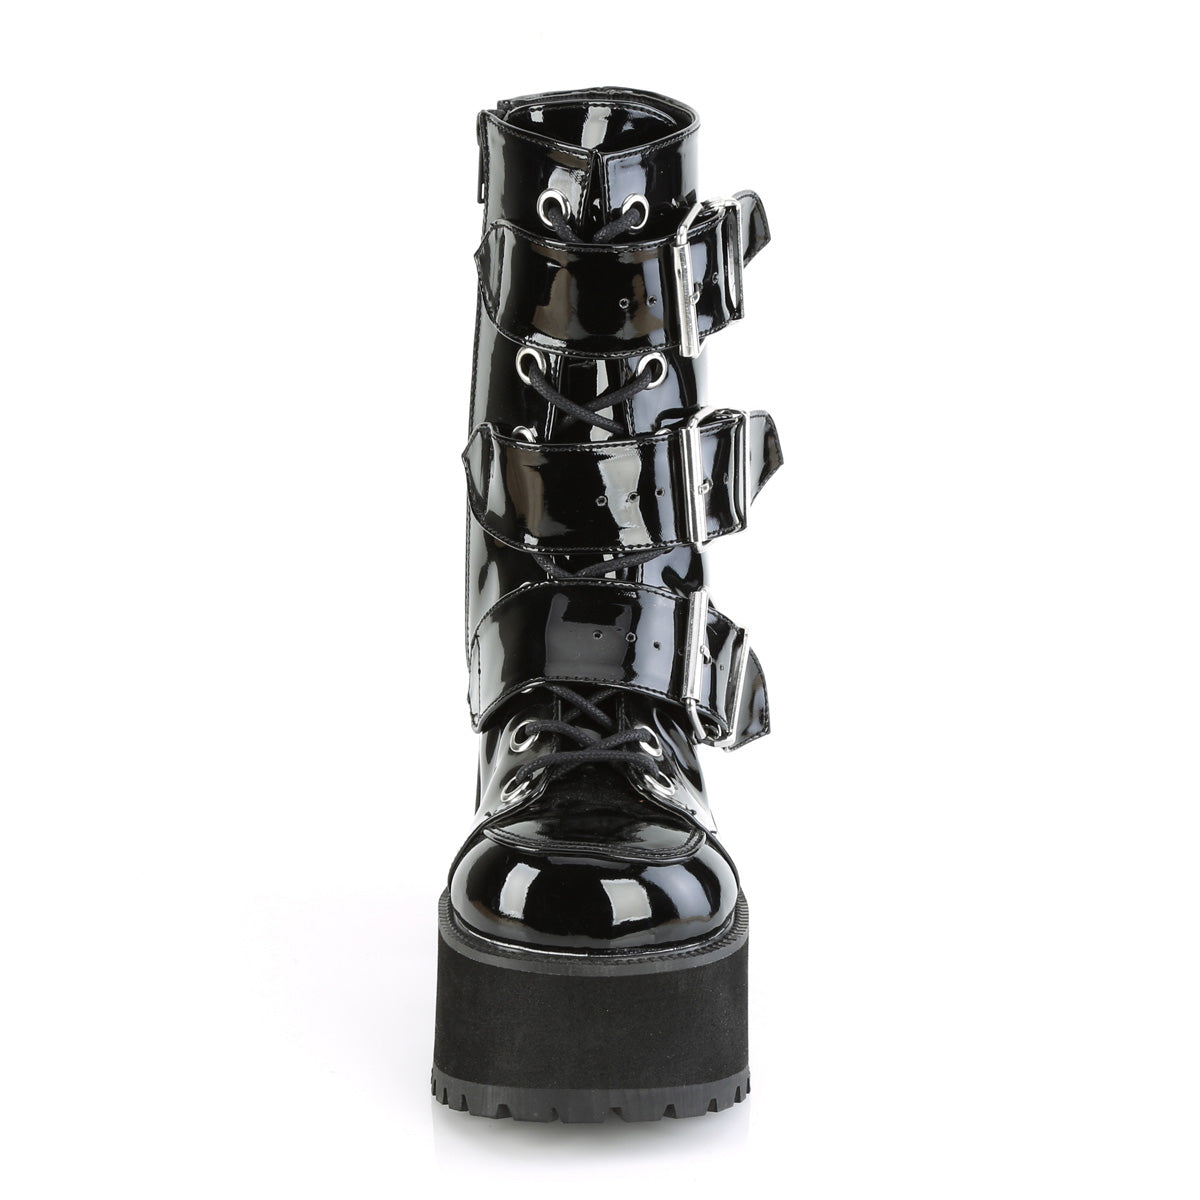 RANGER-308 Black Patent Ankle Boot Demonia